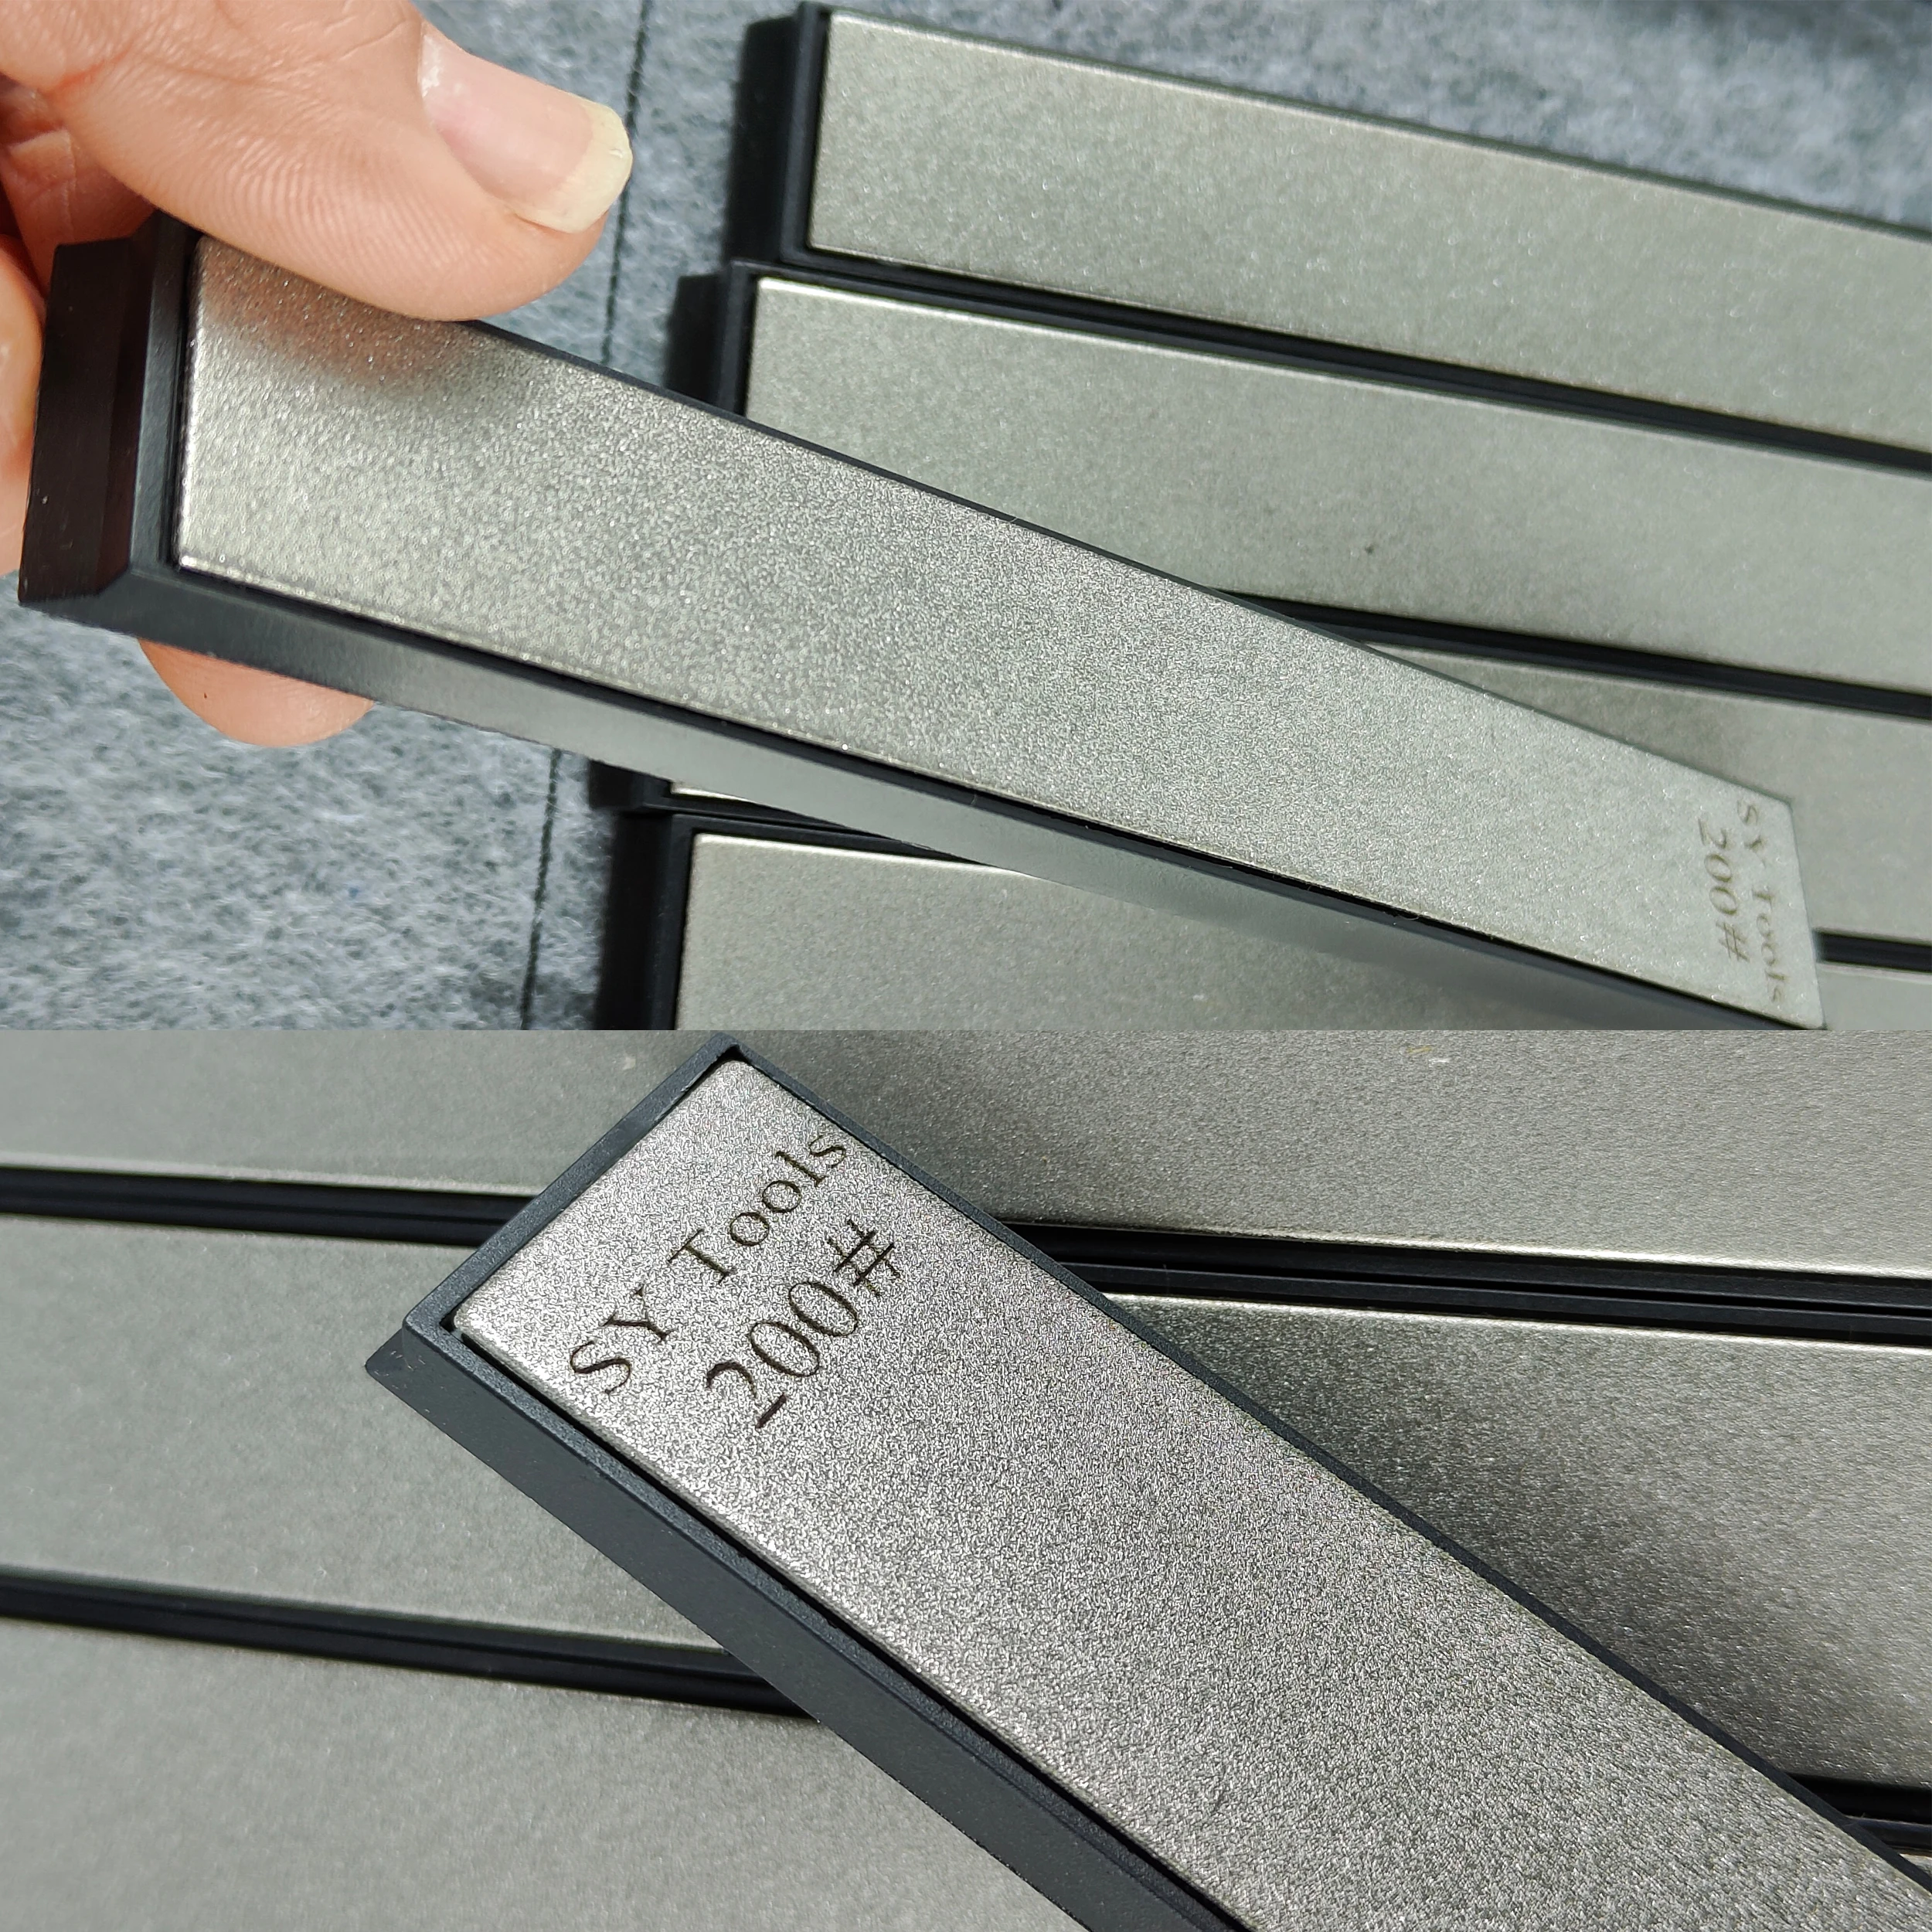 KME Knife Sharpener 4 Standard Stone Set